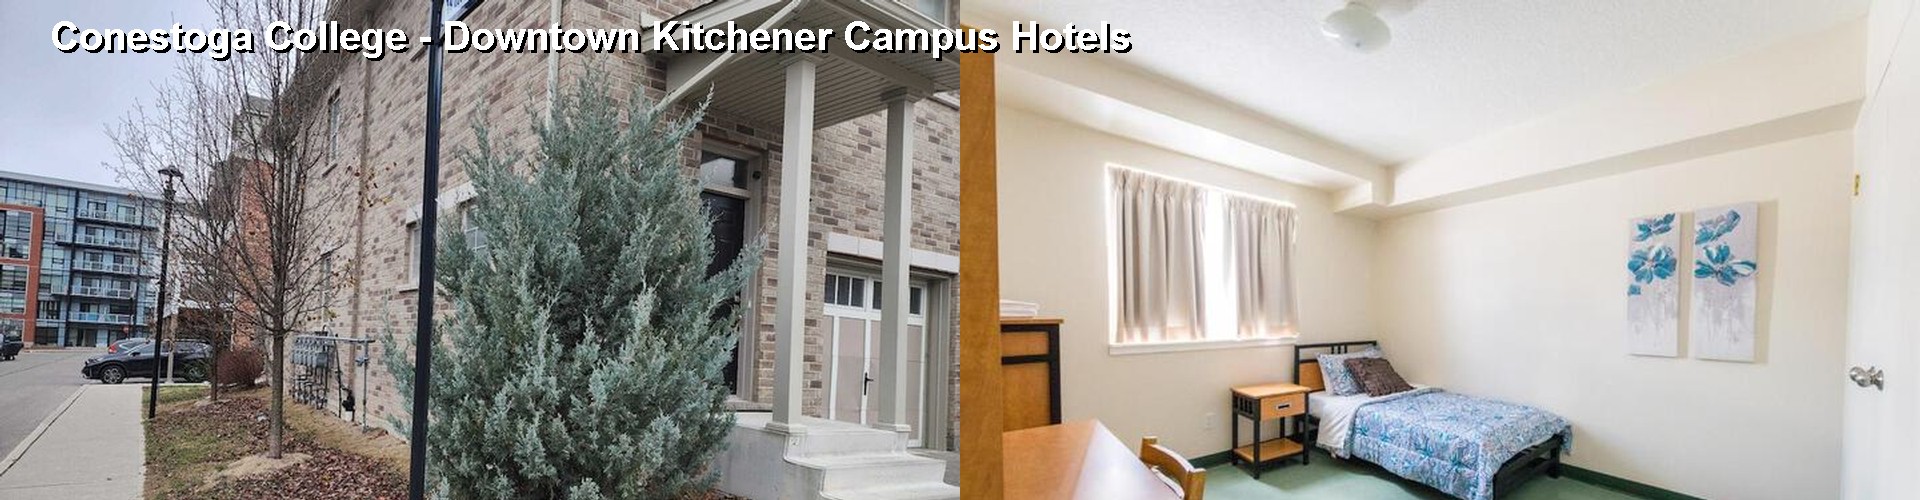 4 Best Hotels near Conestoga College - Downtown Kitchener Campus